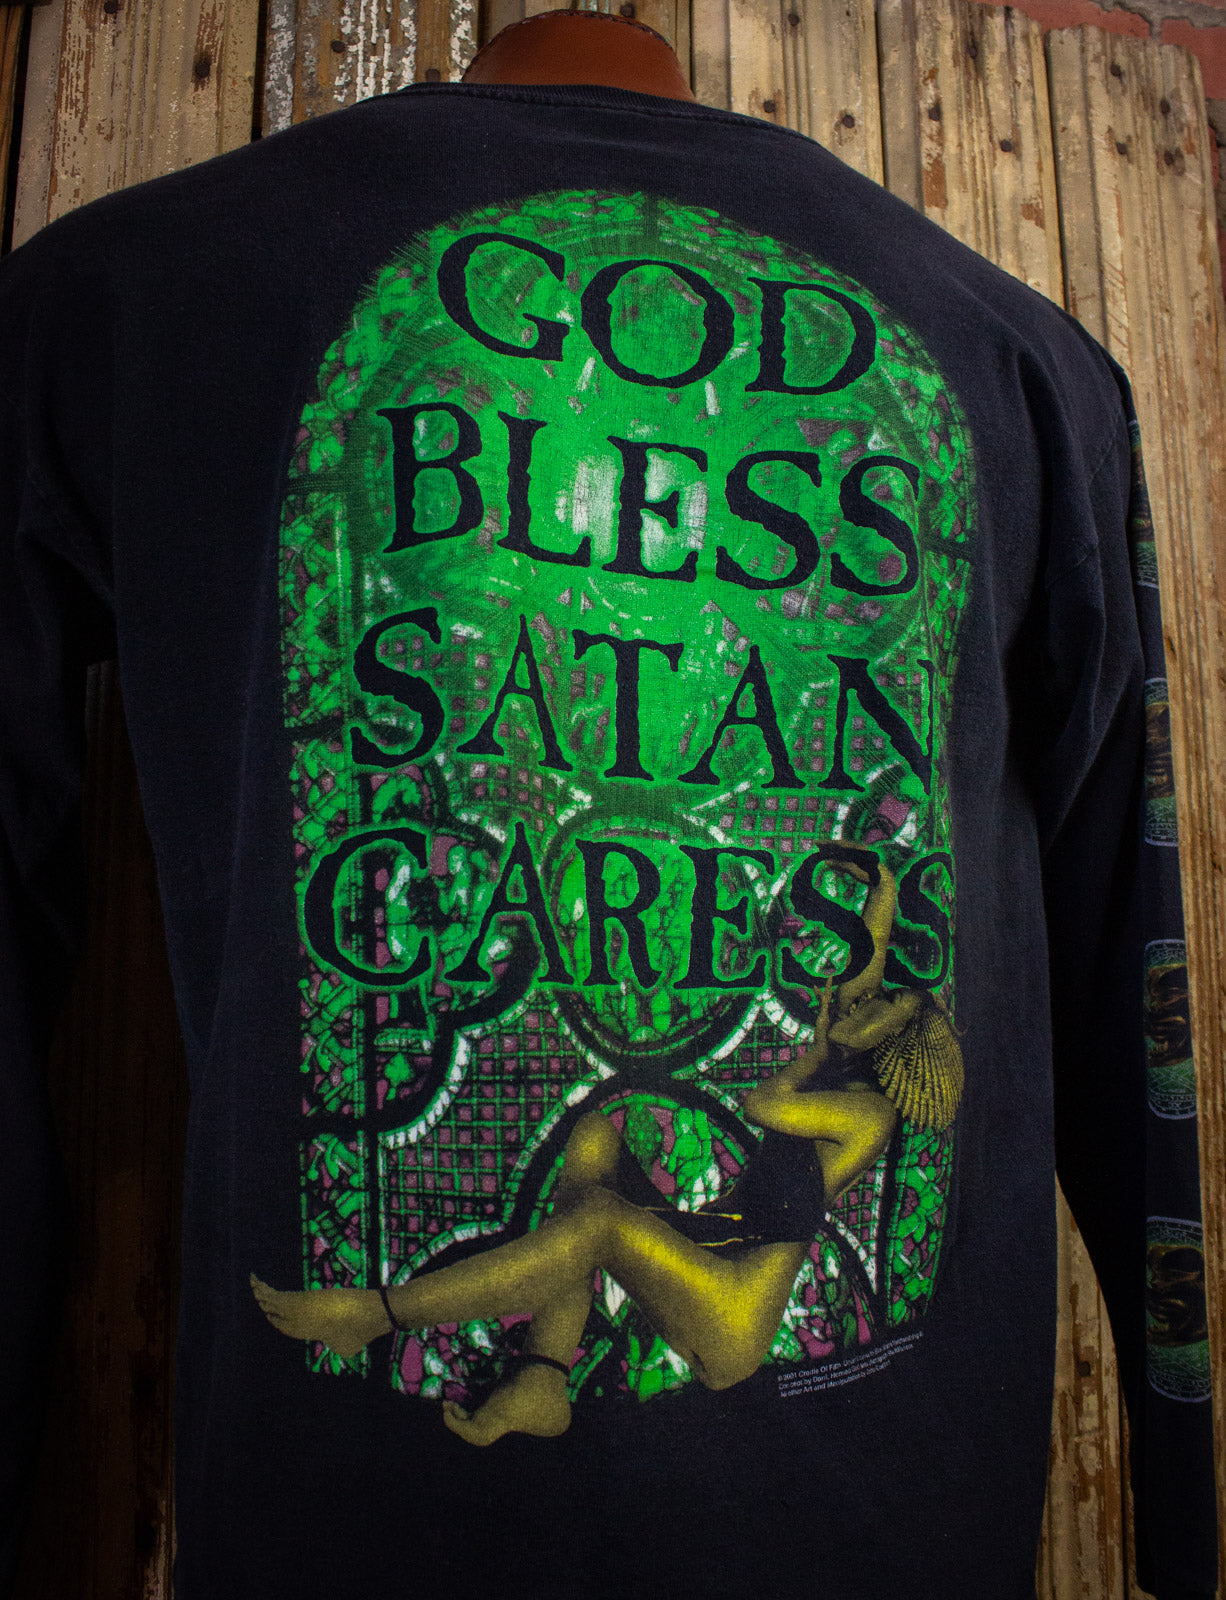 Vintage Cradle of Filth God Bless Satan Cares Concert T Shirt 2001 Black Large